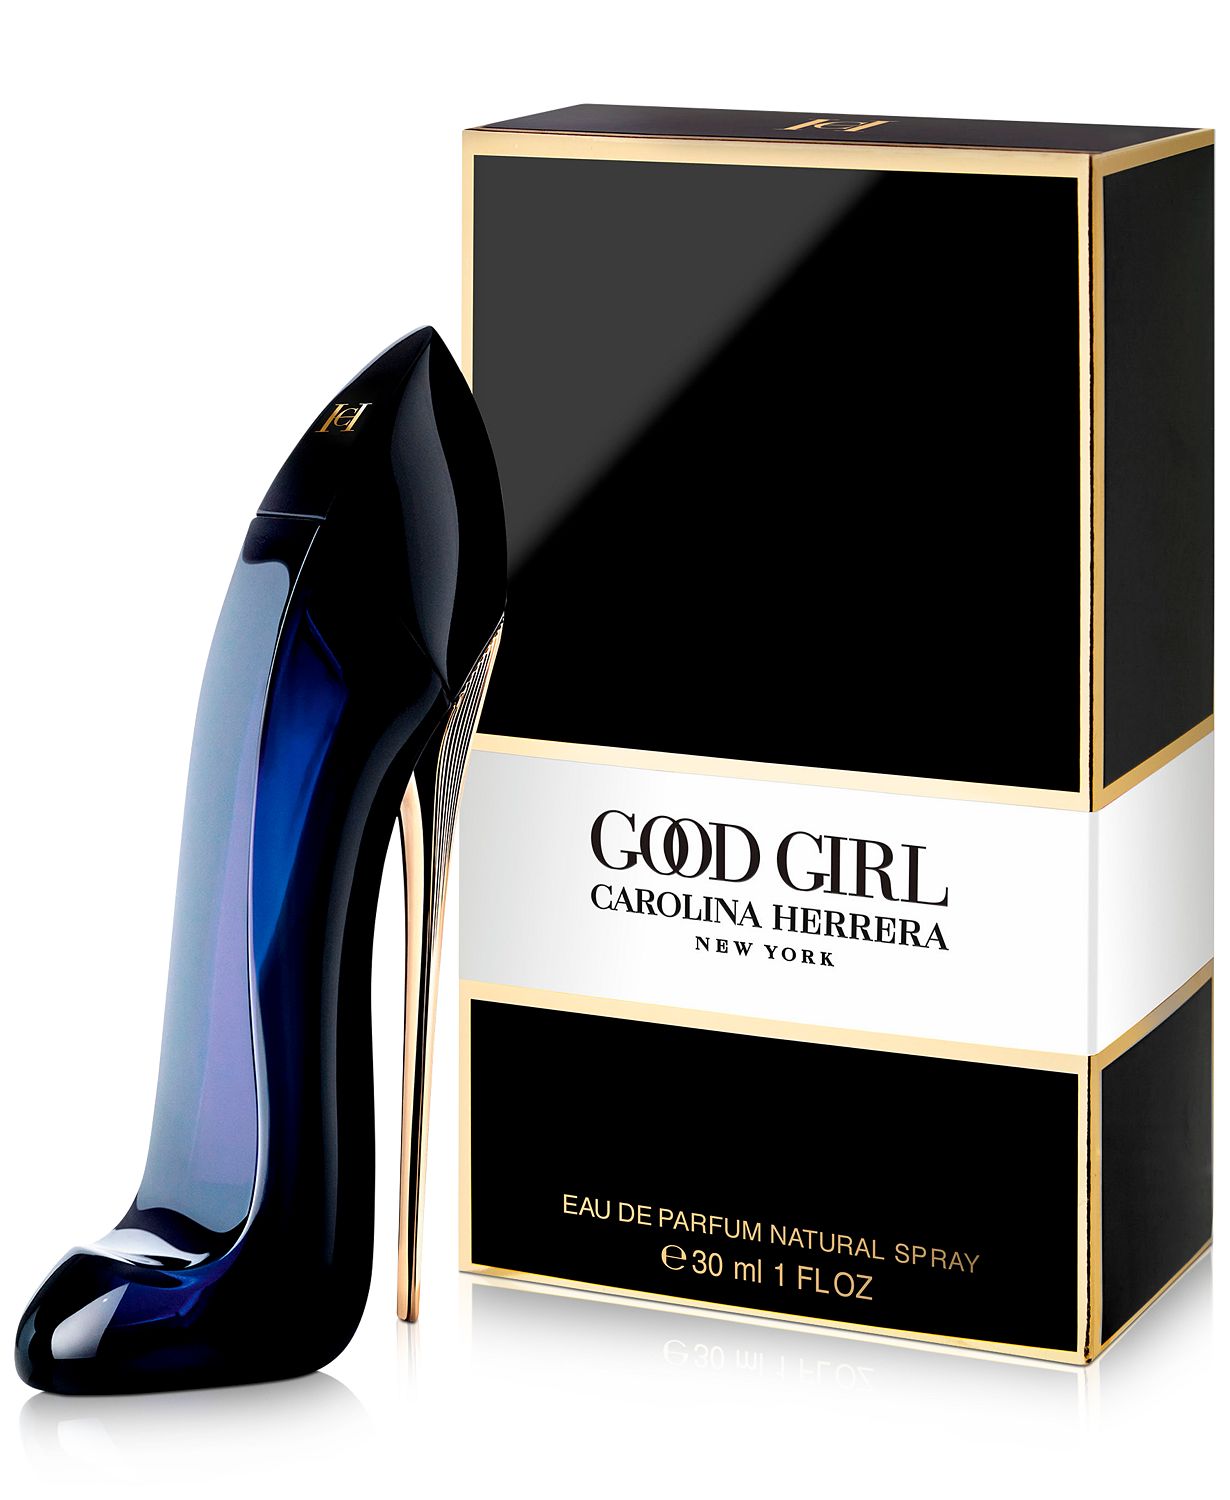 Good Girl Eau de Parfum Spray, 1 oz.